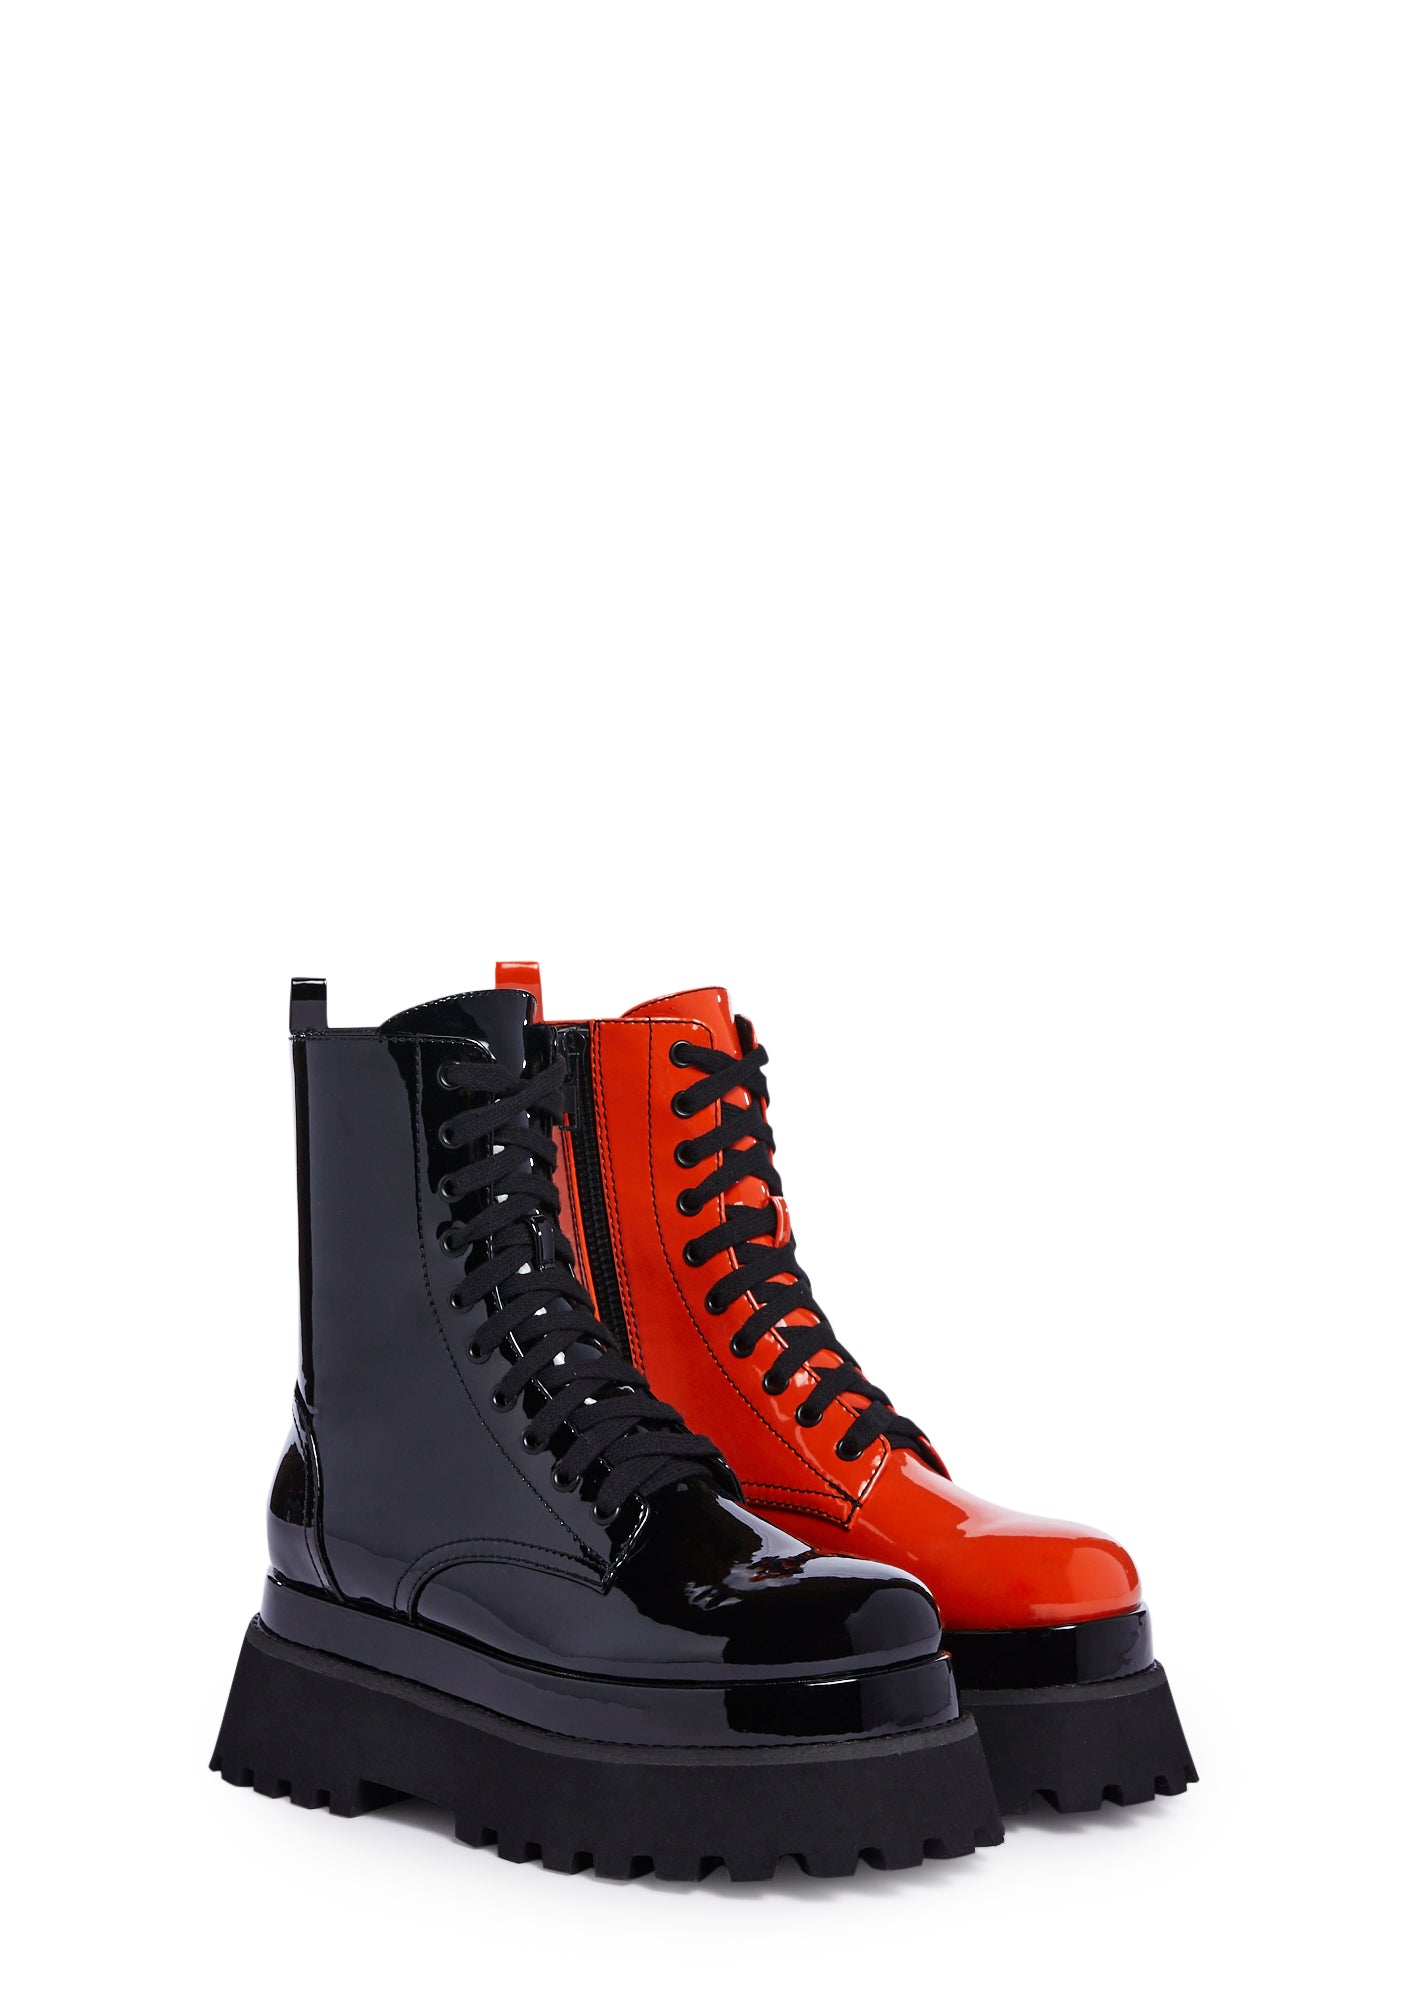 Trickz N Treatz Patent Mismatched Combat Boots - Black/Orange – Dolls Kill